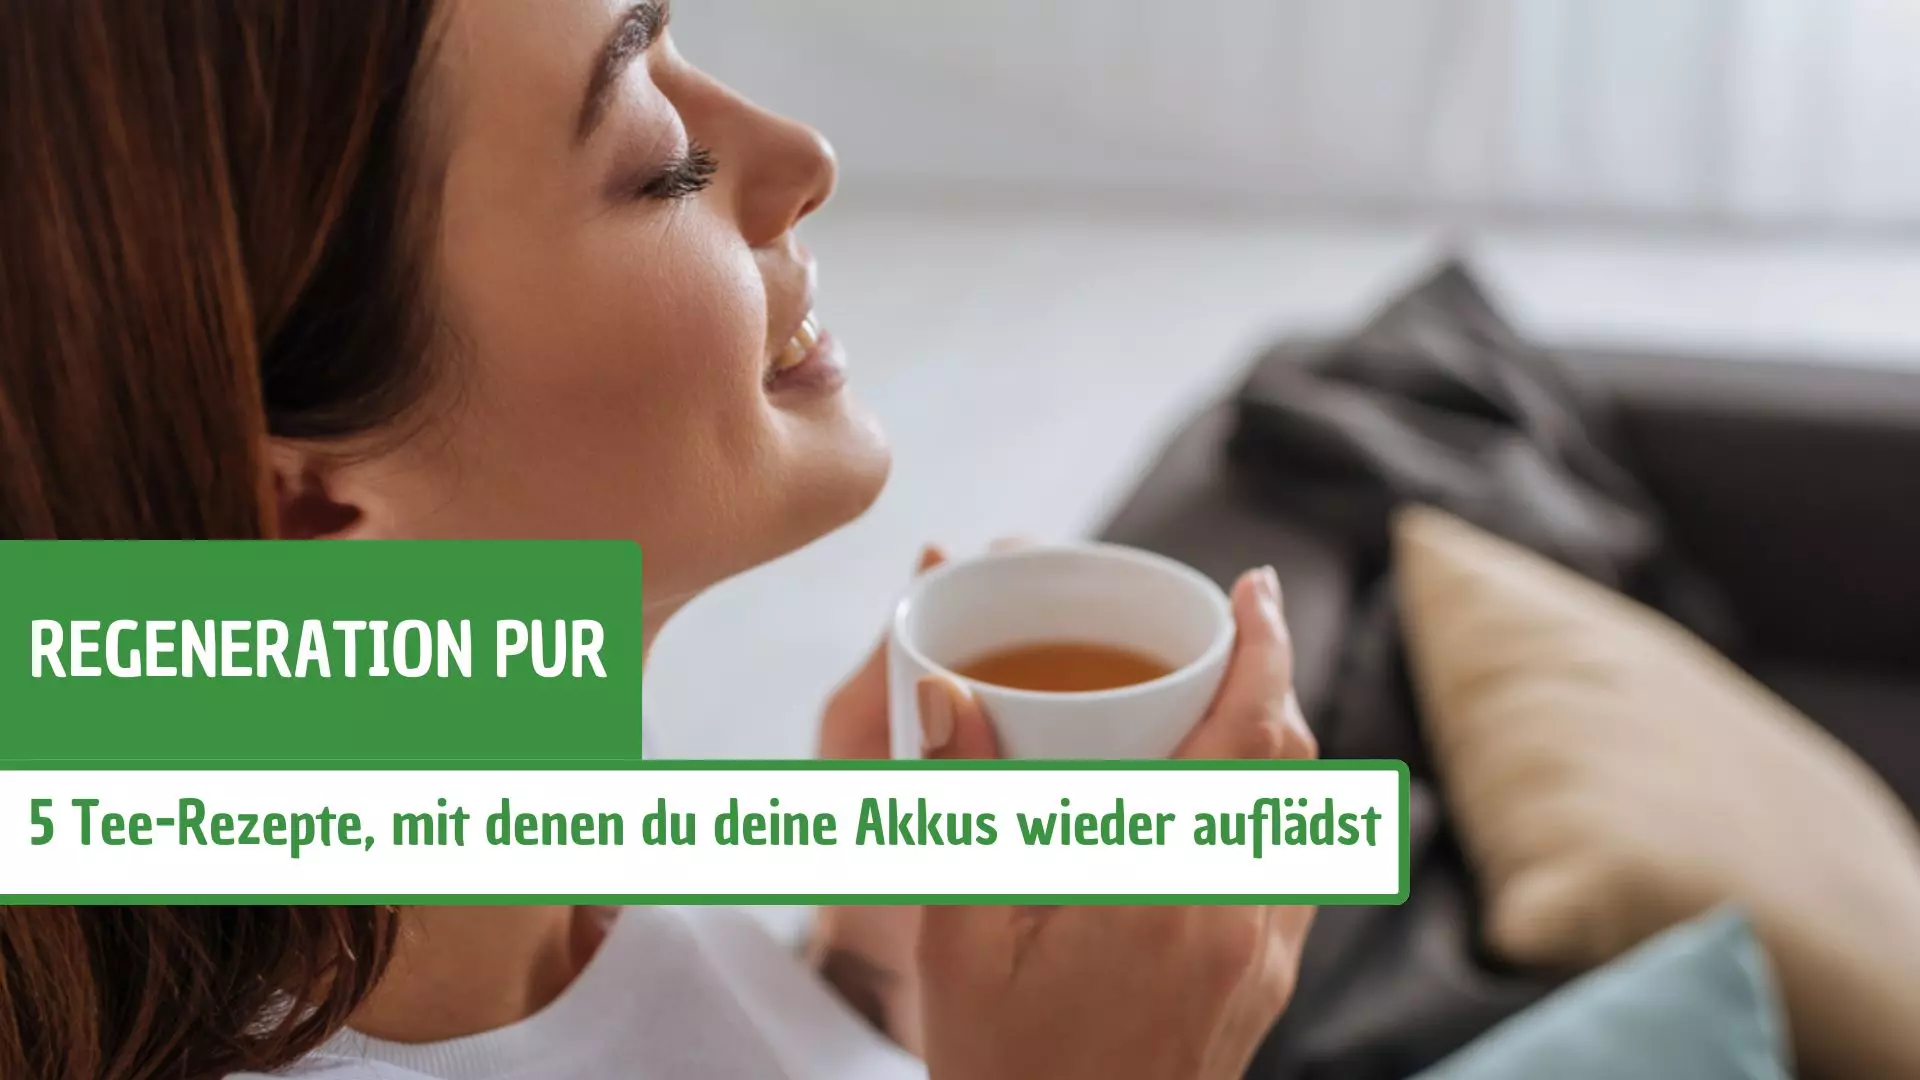 Regeneration pur: 5 Tee-Rezepte, mit denen du deine Akkus wieder auflädst